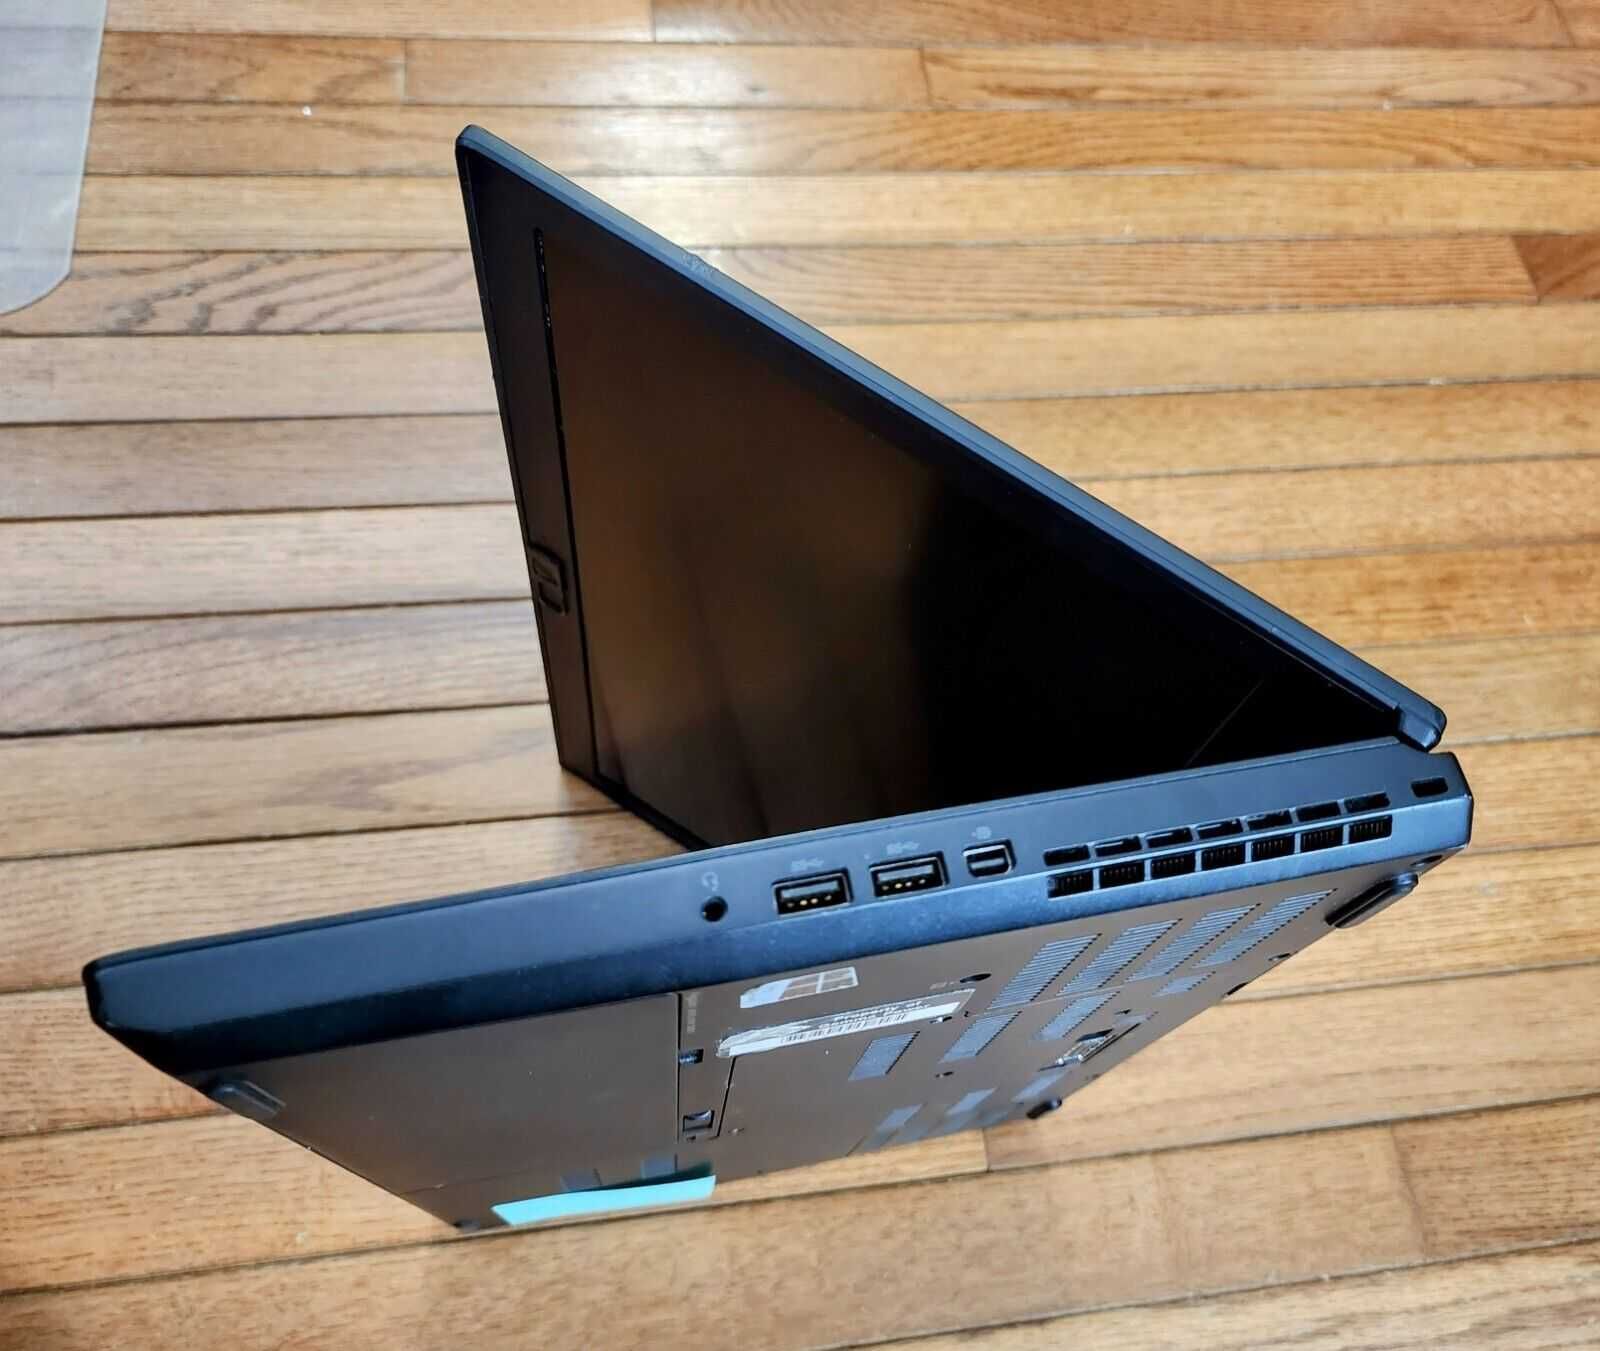 ThinkPad P50 15.6 FHD i7-6700HQ / 16gb ddr4 / 500 ssd / Quadro M1000M